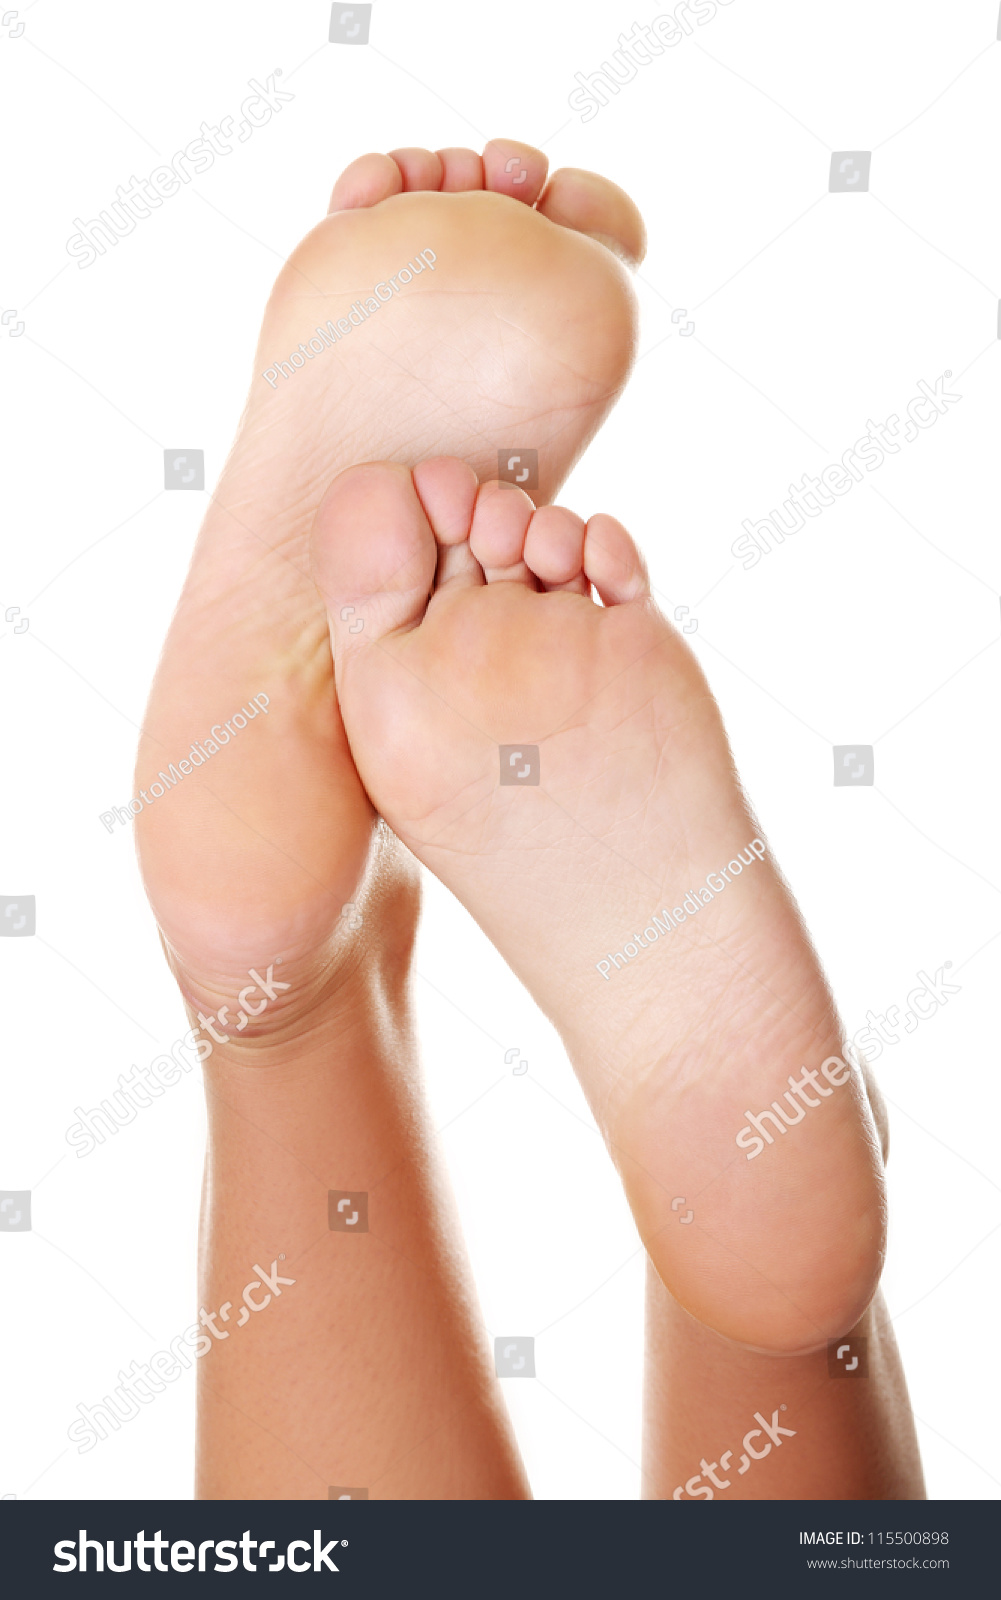 Best of Pretty white women feet